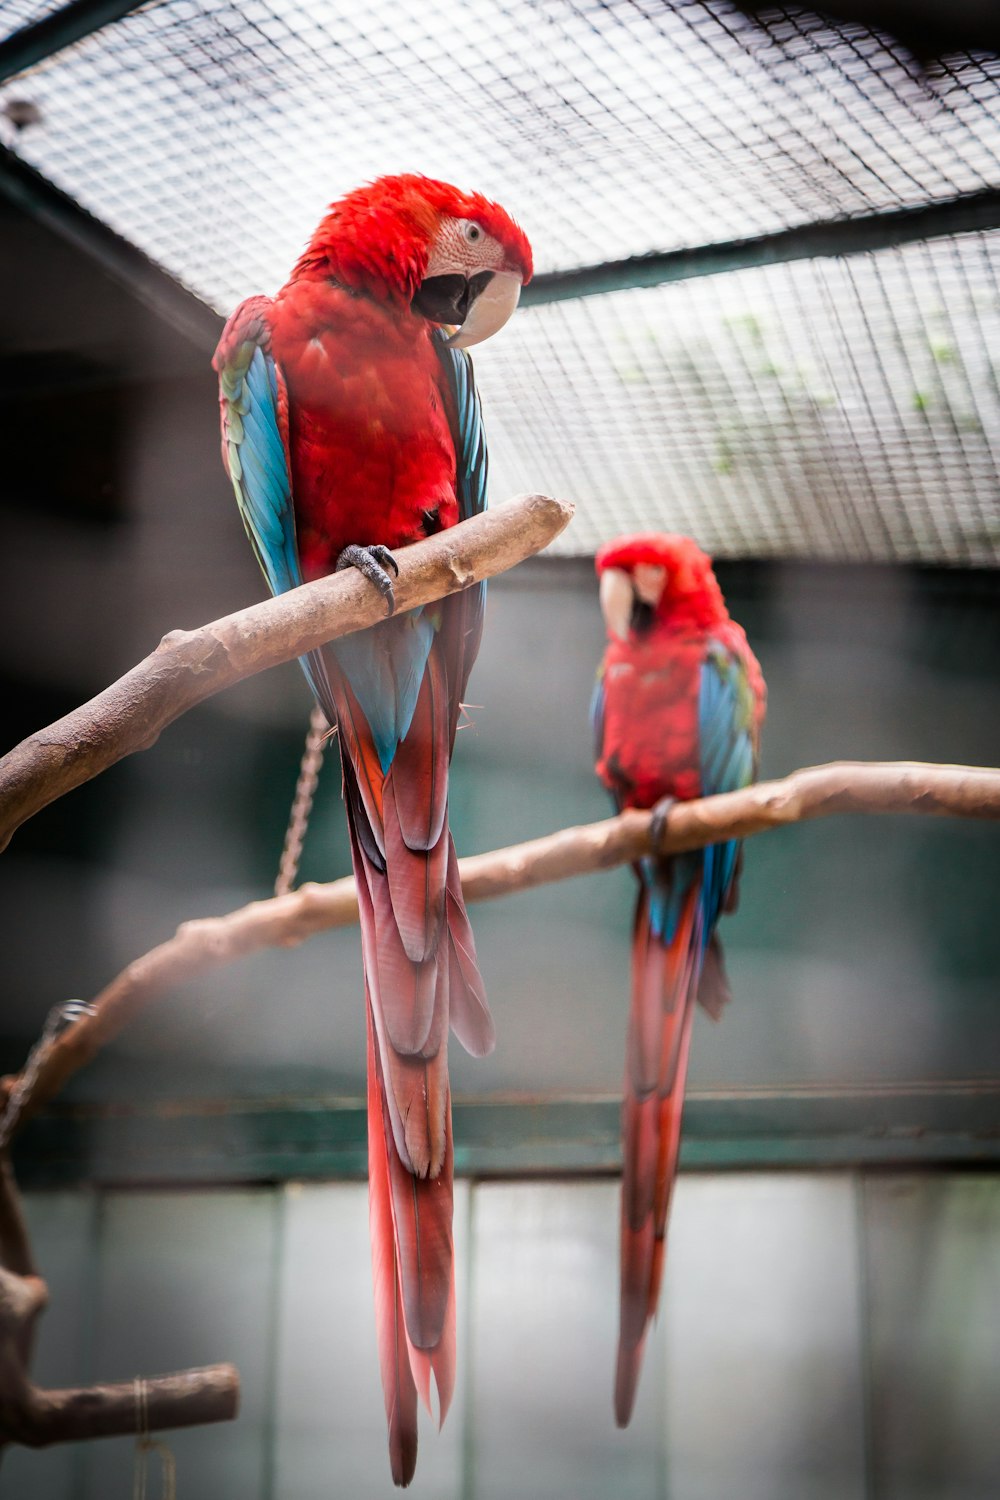 Photographie de deux aras rouges, bleus et verts